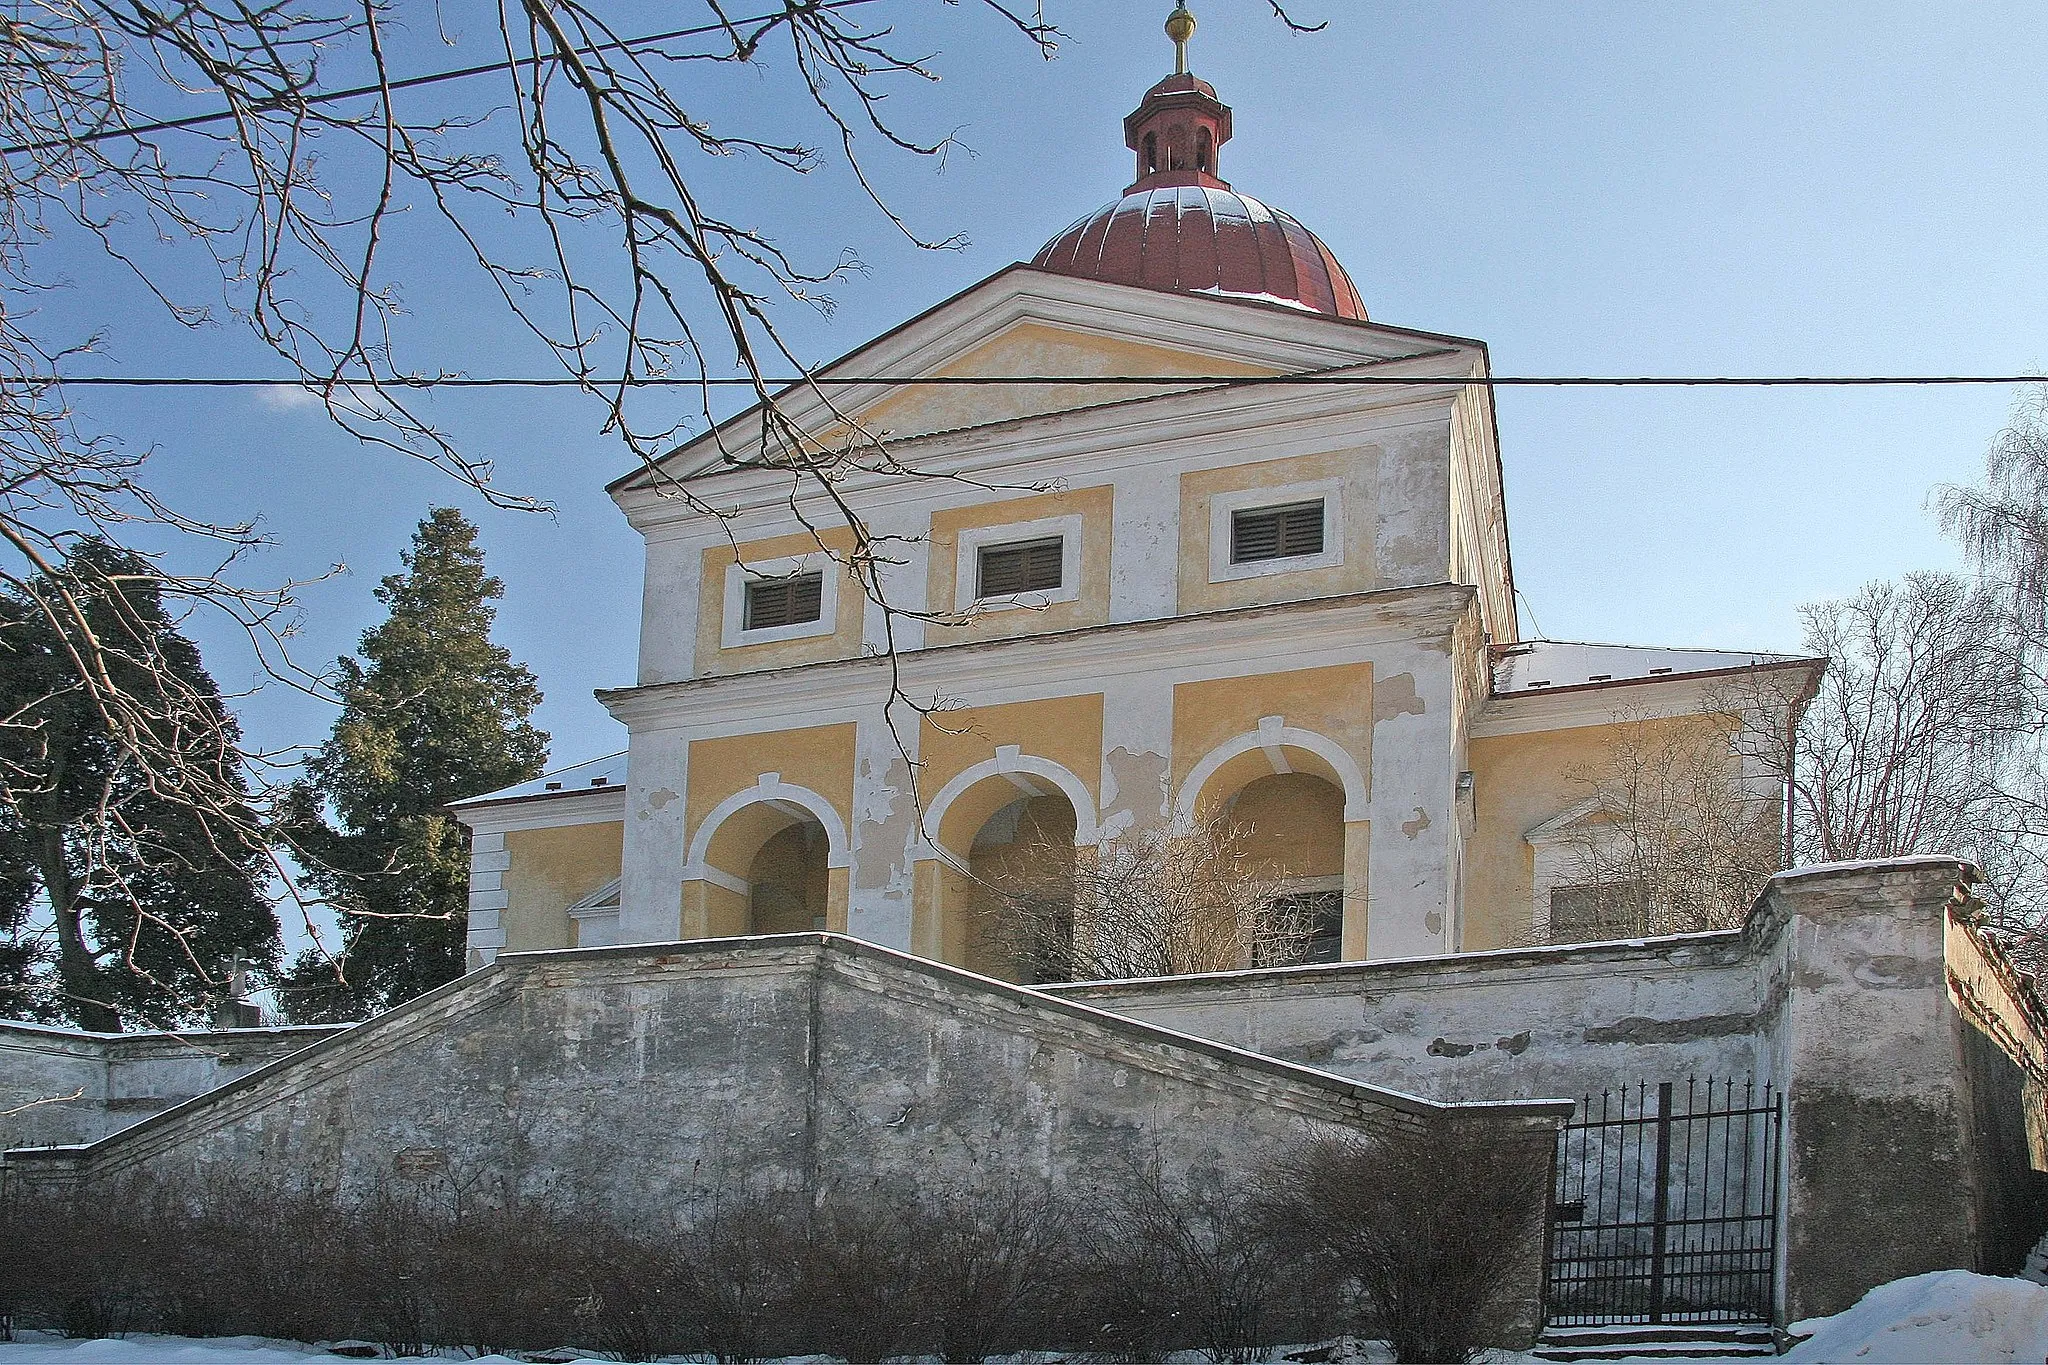 Photo showing: Kostel Svatého Petra Pavla v Dolních Chvatlinách
autor: Prazak

Date: 37. 2. 2006